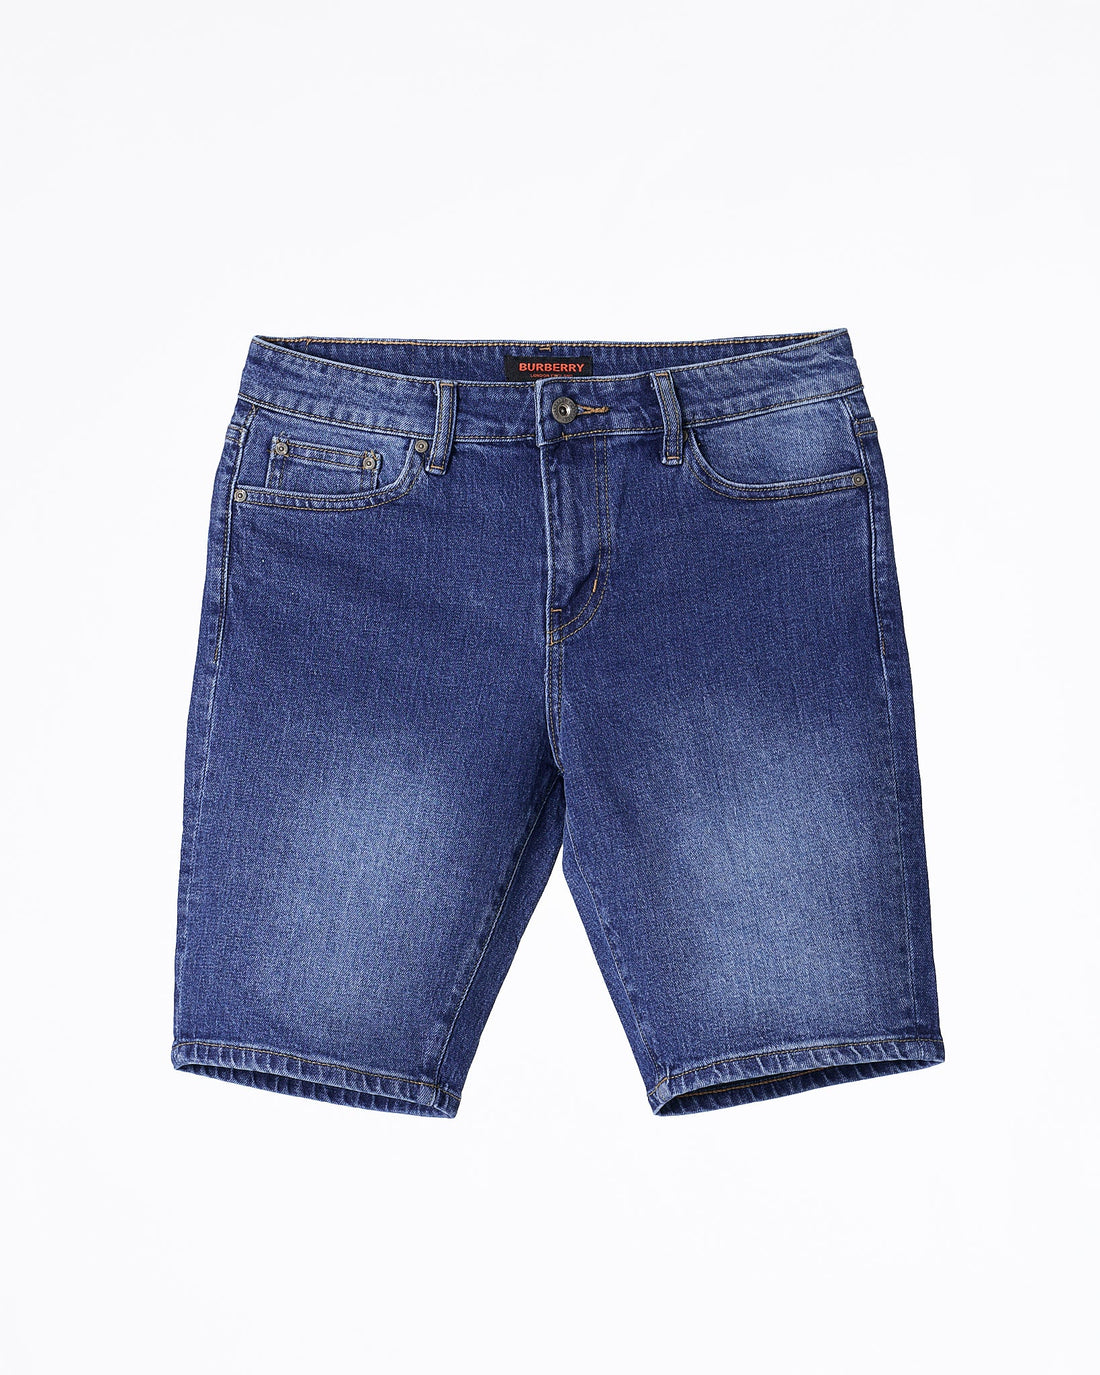 MOI OUTFIT-BR Men Blue Short Jeans 18.90